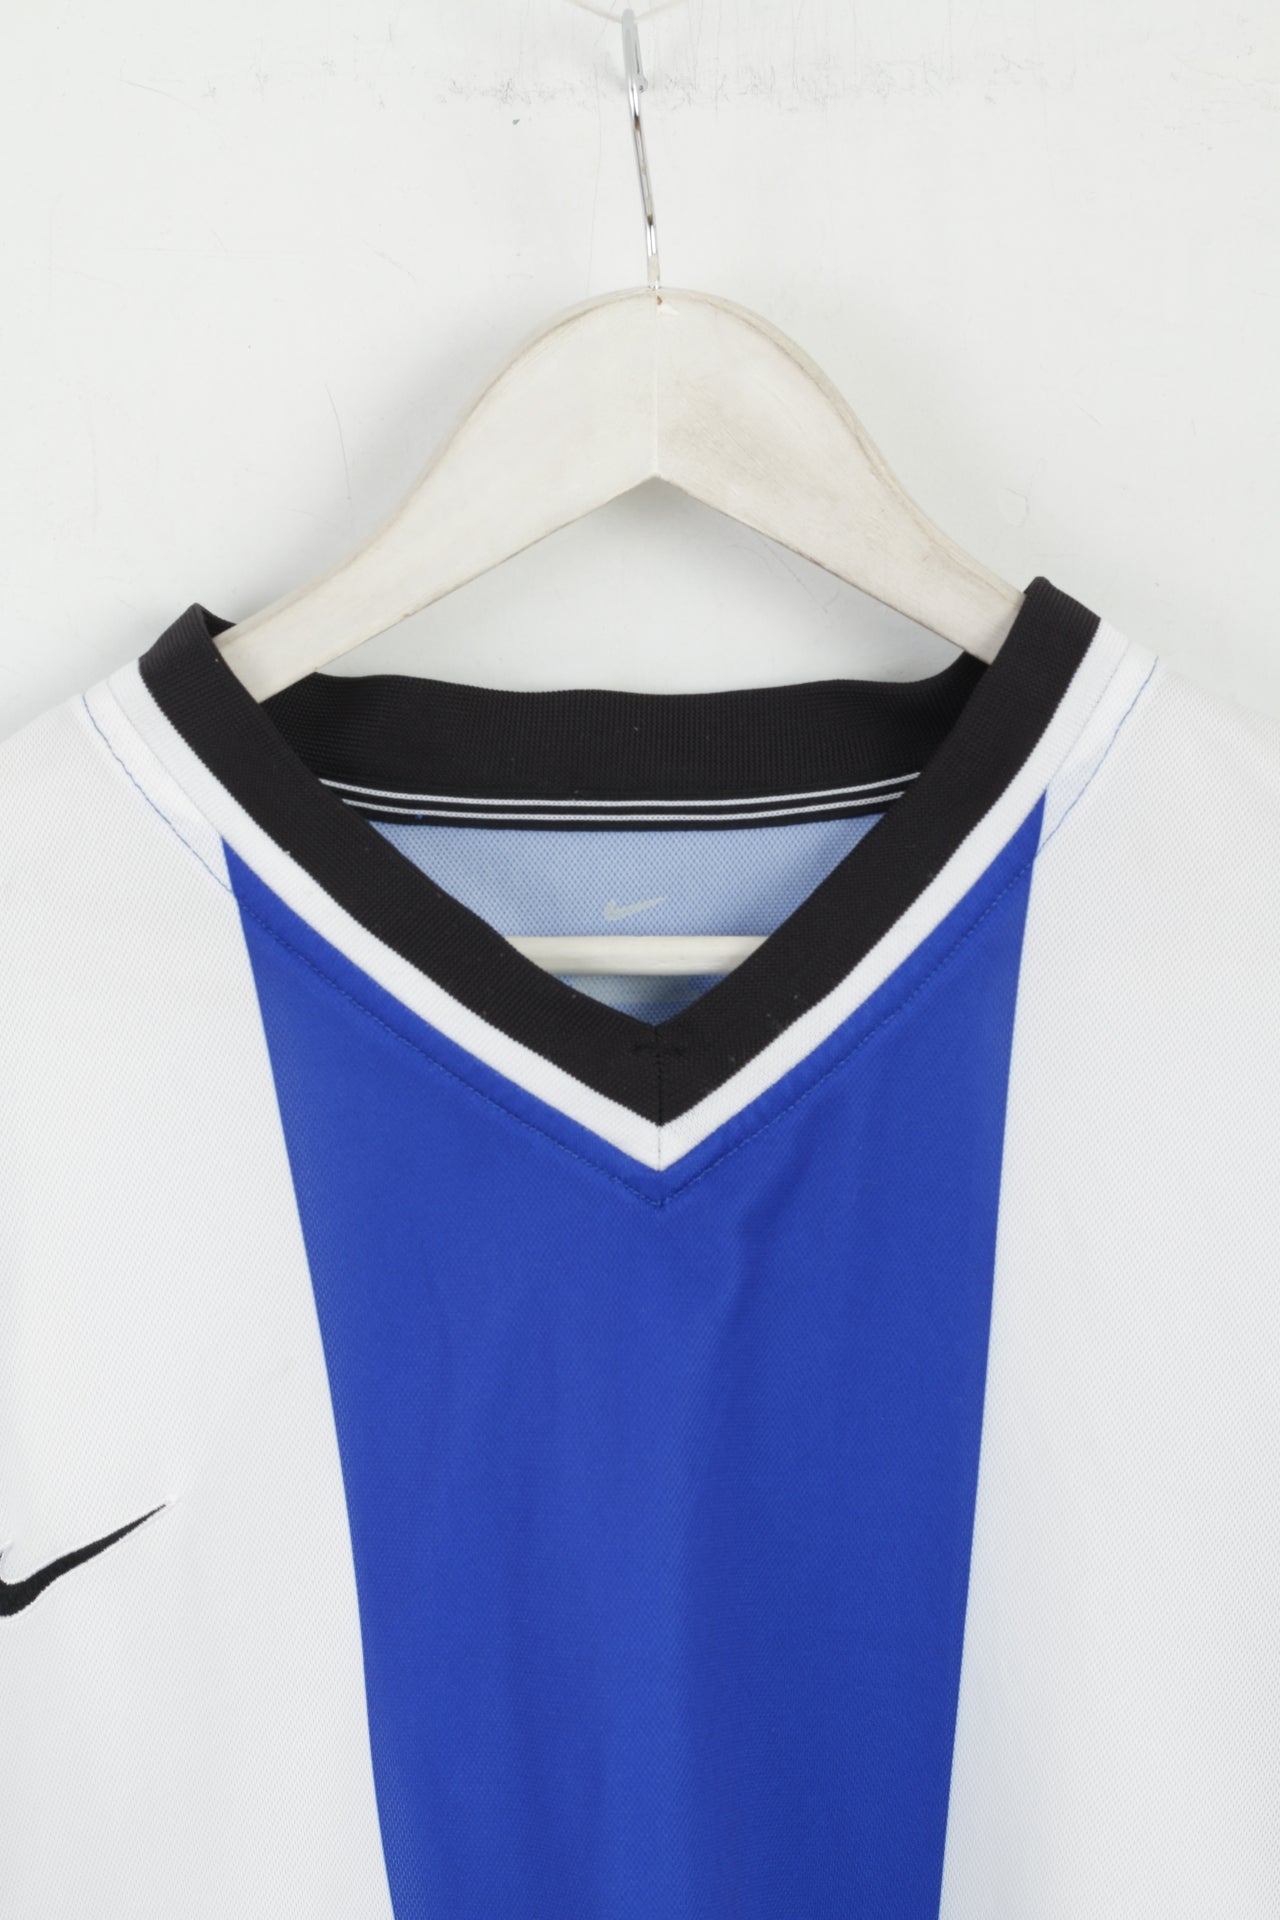 Nike Team Men XL Long Sleeved Shirt Blue White Striped Football Jersey Sport Top